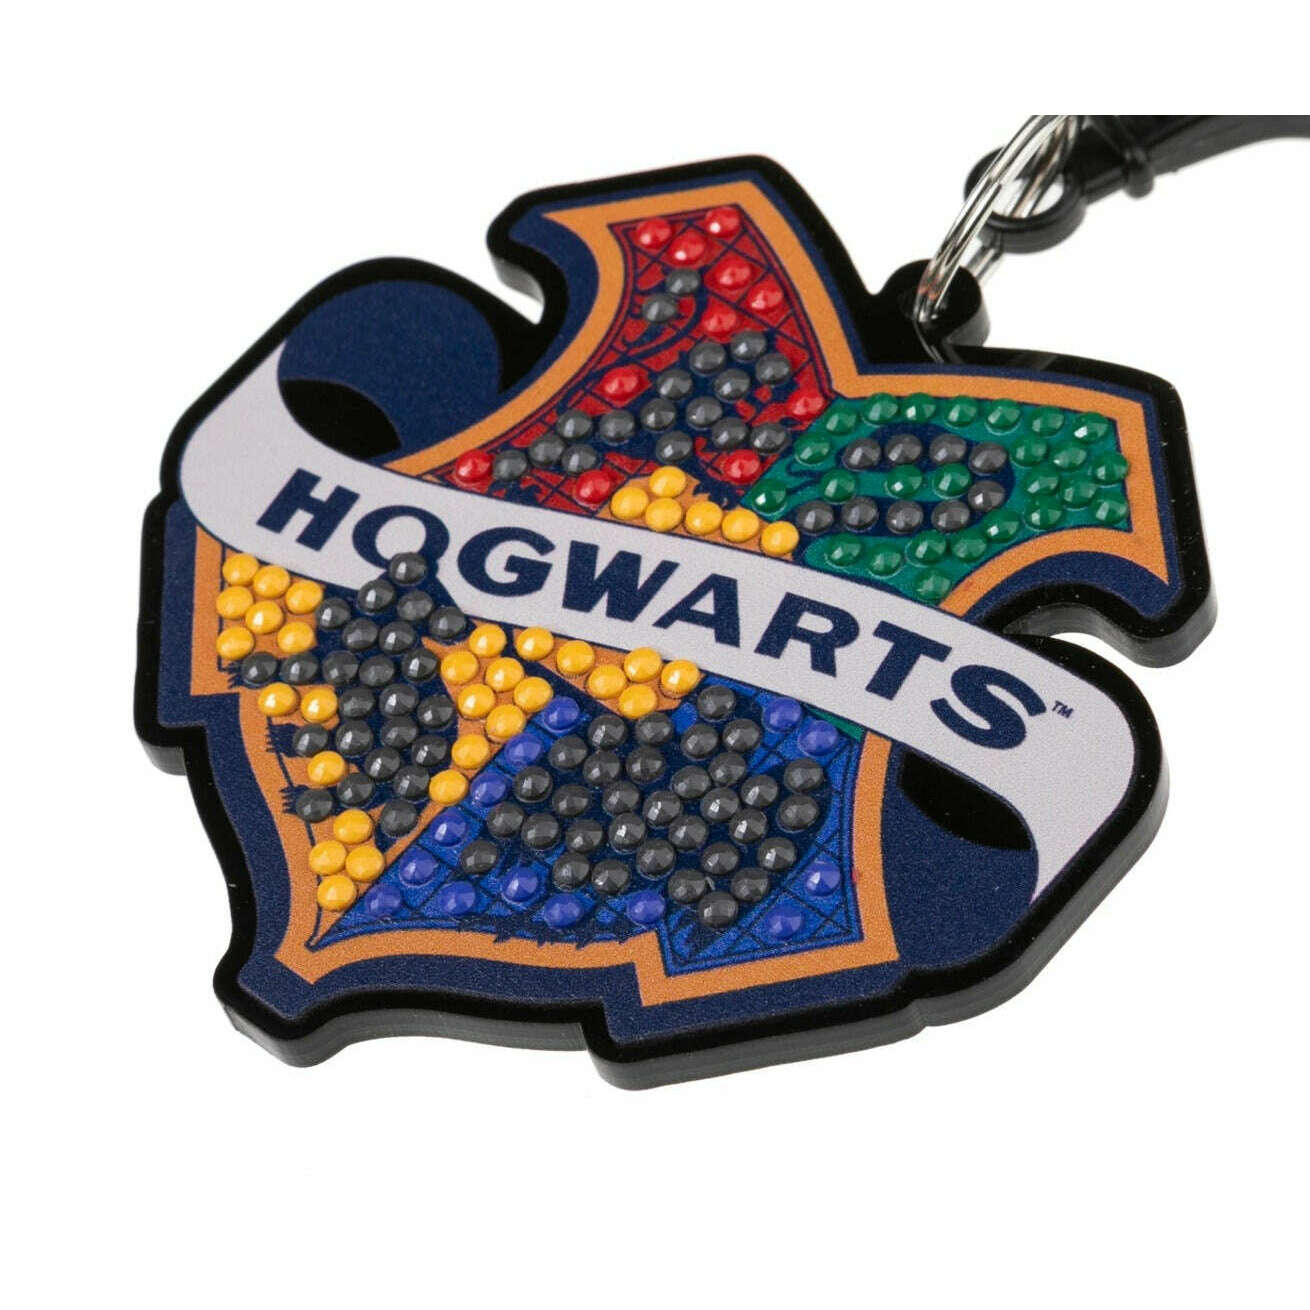 Toys N Tuck:Crystal Art Bag Charms Harry Potter - Hogwarts Badge,Harry Potter